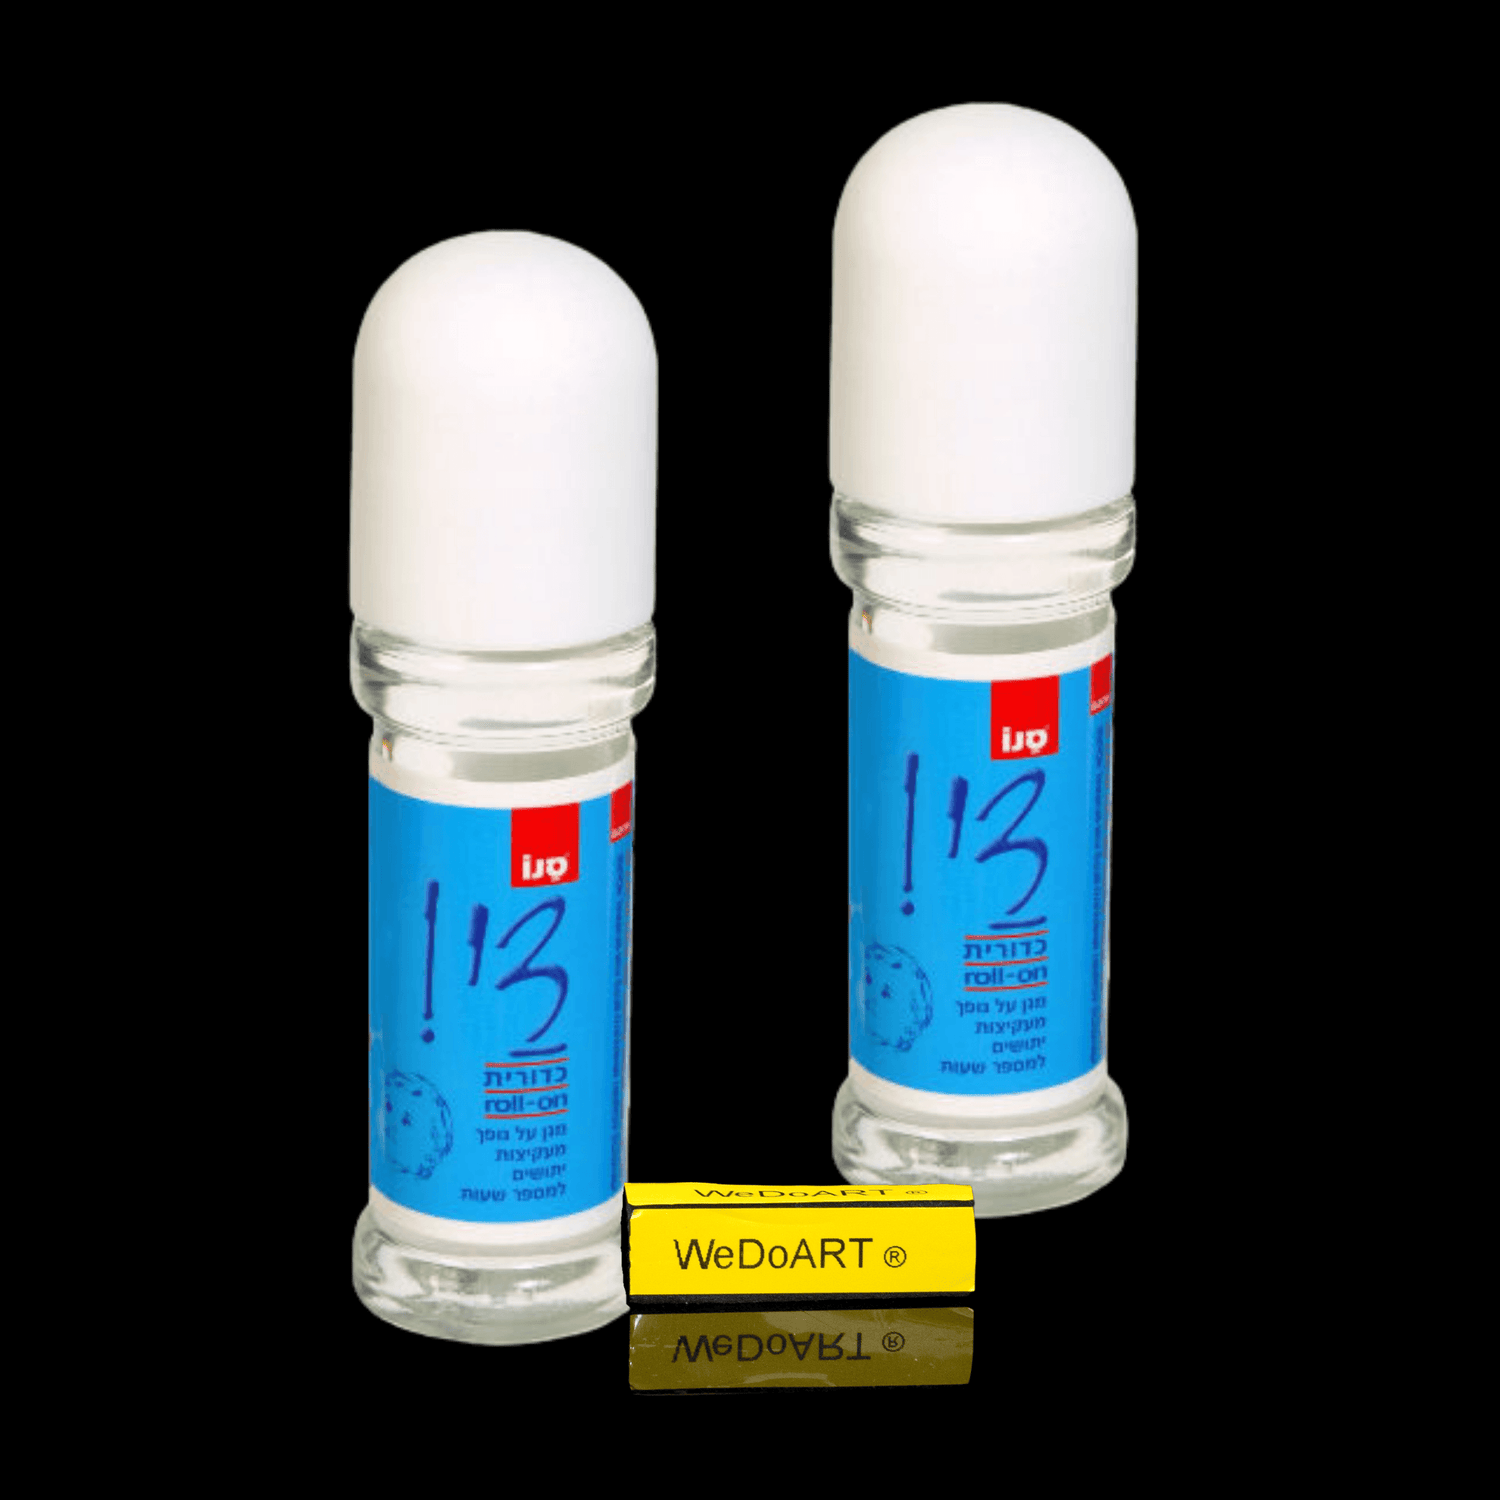 Sano Dai! Mosquito Repellent 2 bottles 2x50Ml - WEDOART-IL